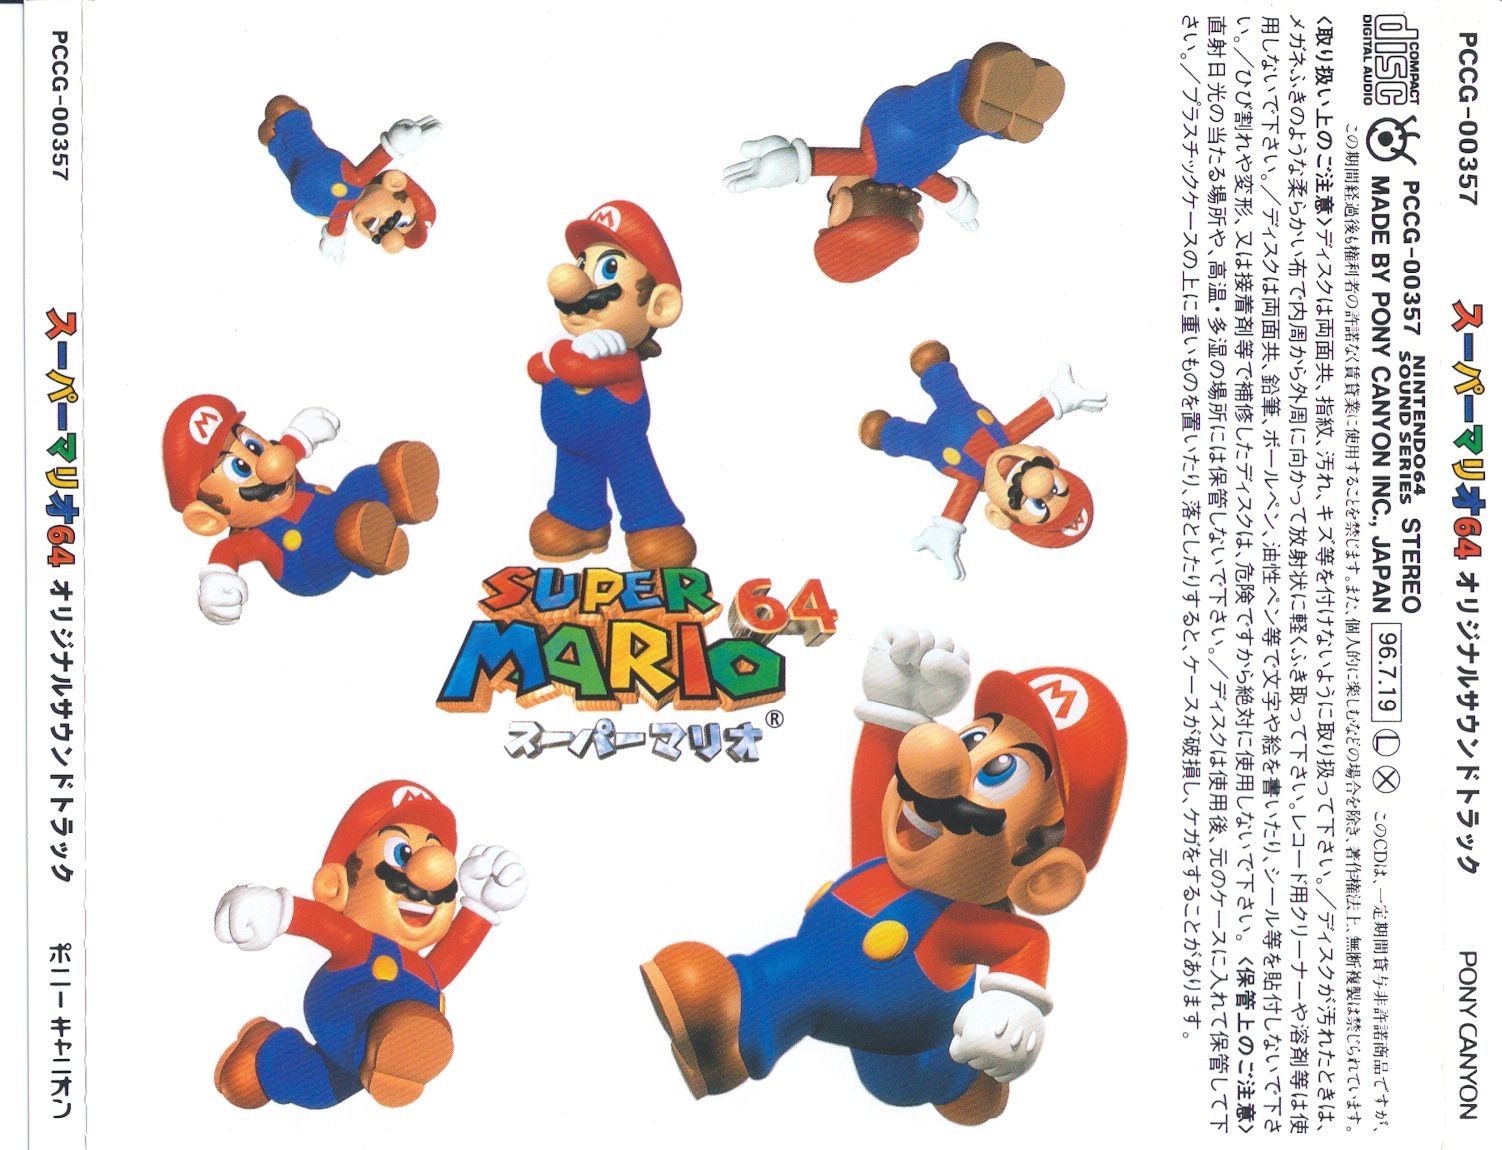 Super Mario 64 Original Soundtrack (1996) MP3 - Download Super